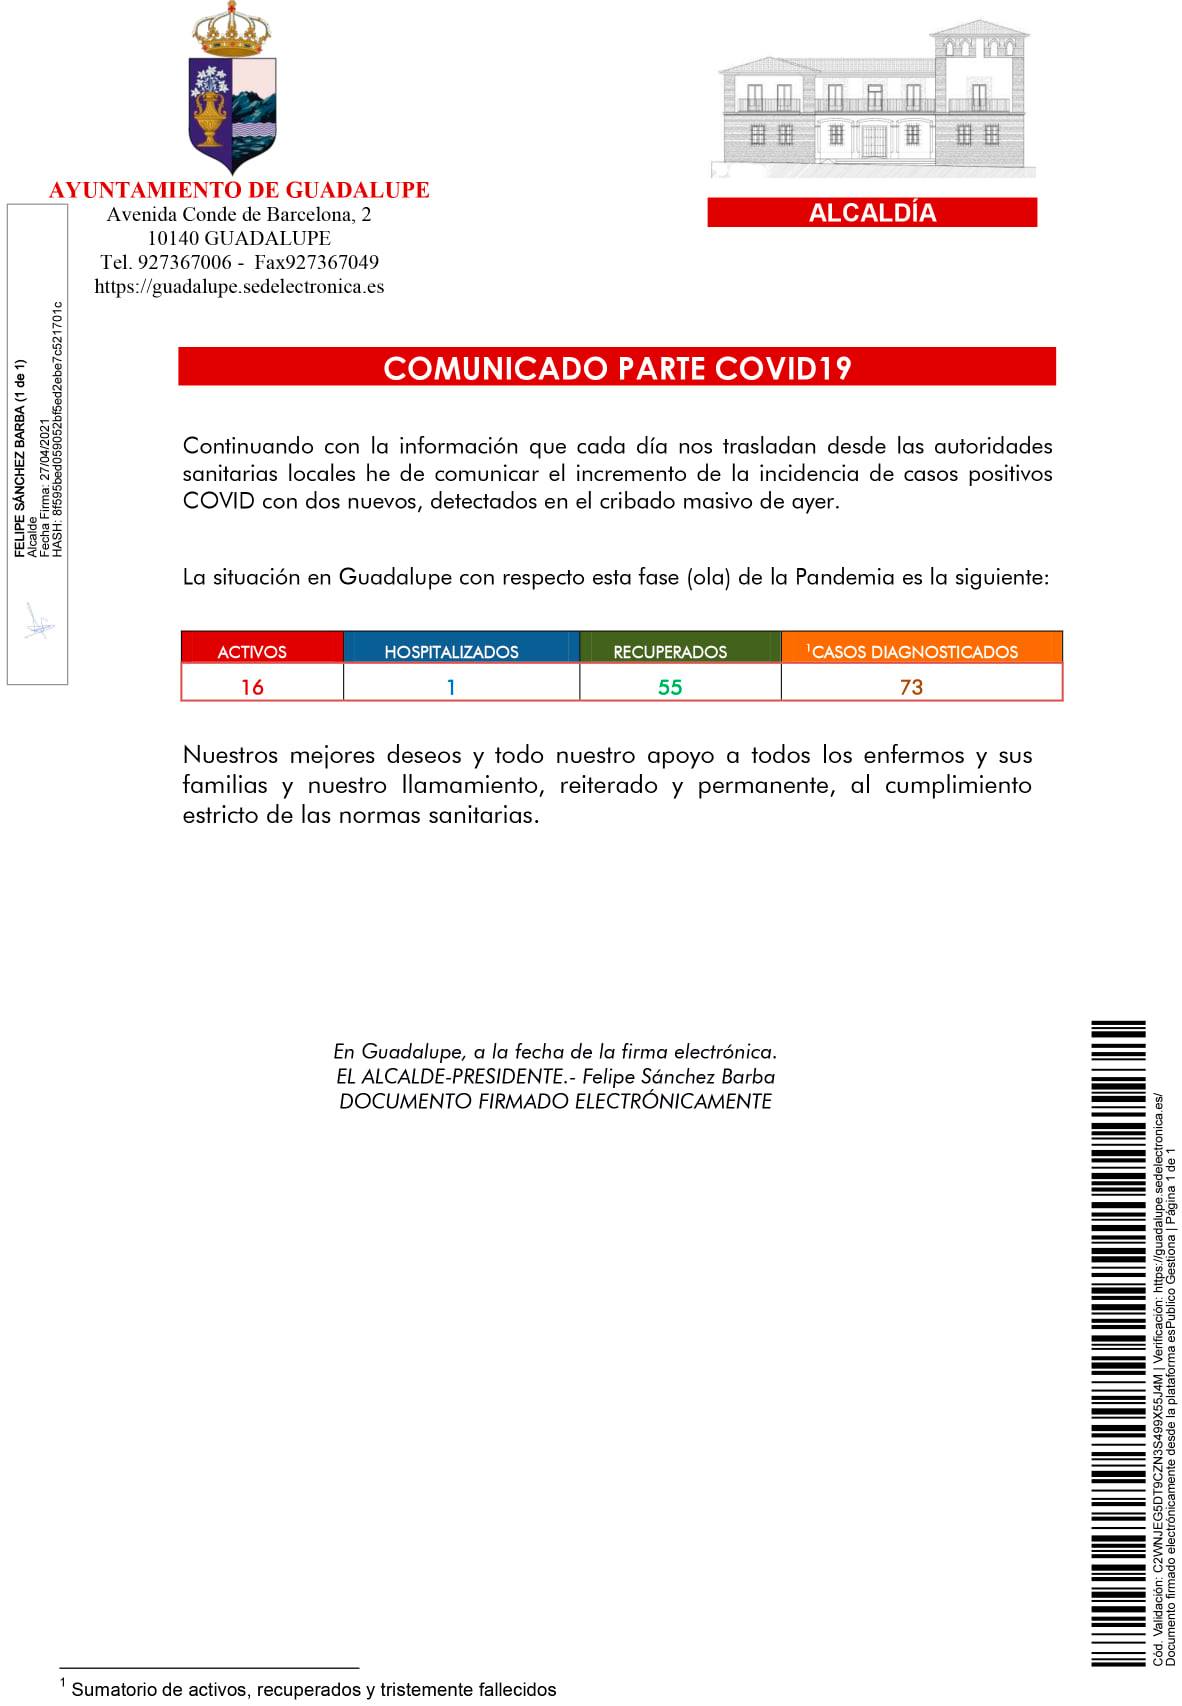 16 casos positivos activos de COVID-19 (abril 2021) - Guadalupe (Cáceres)